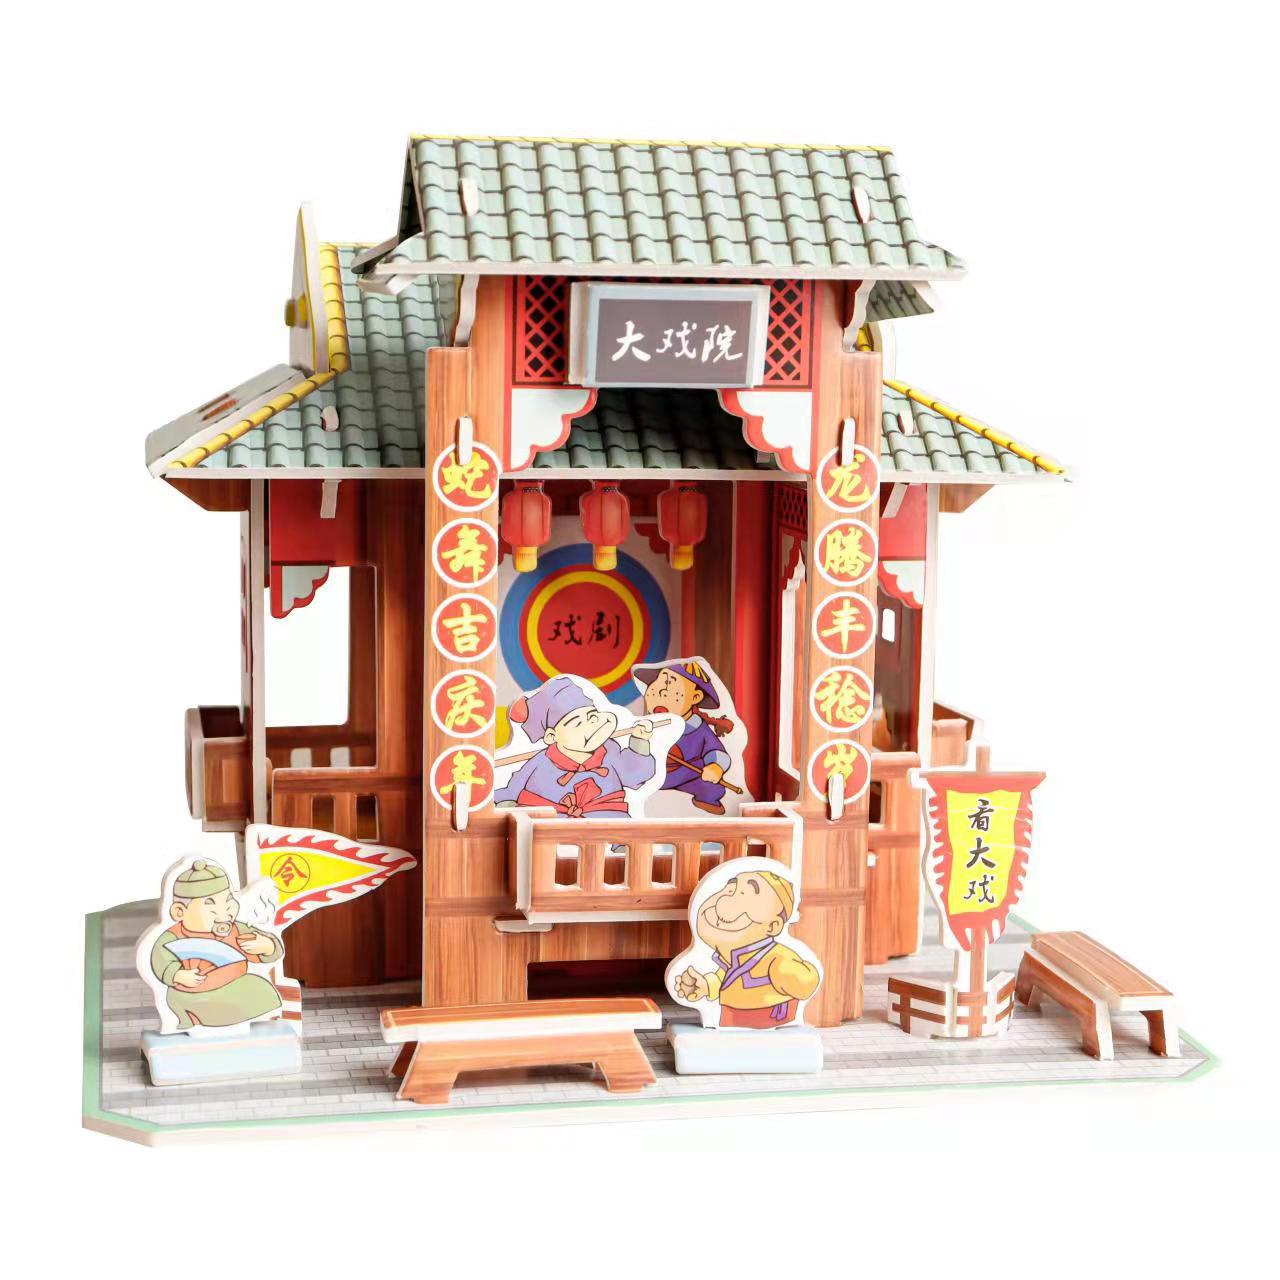 中国著名古建筑物中华街立体拼图儿童玩具模型兴隆酒馆DIY3D拼图